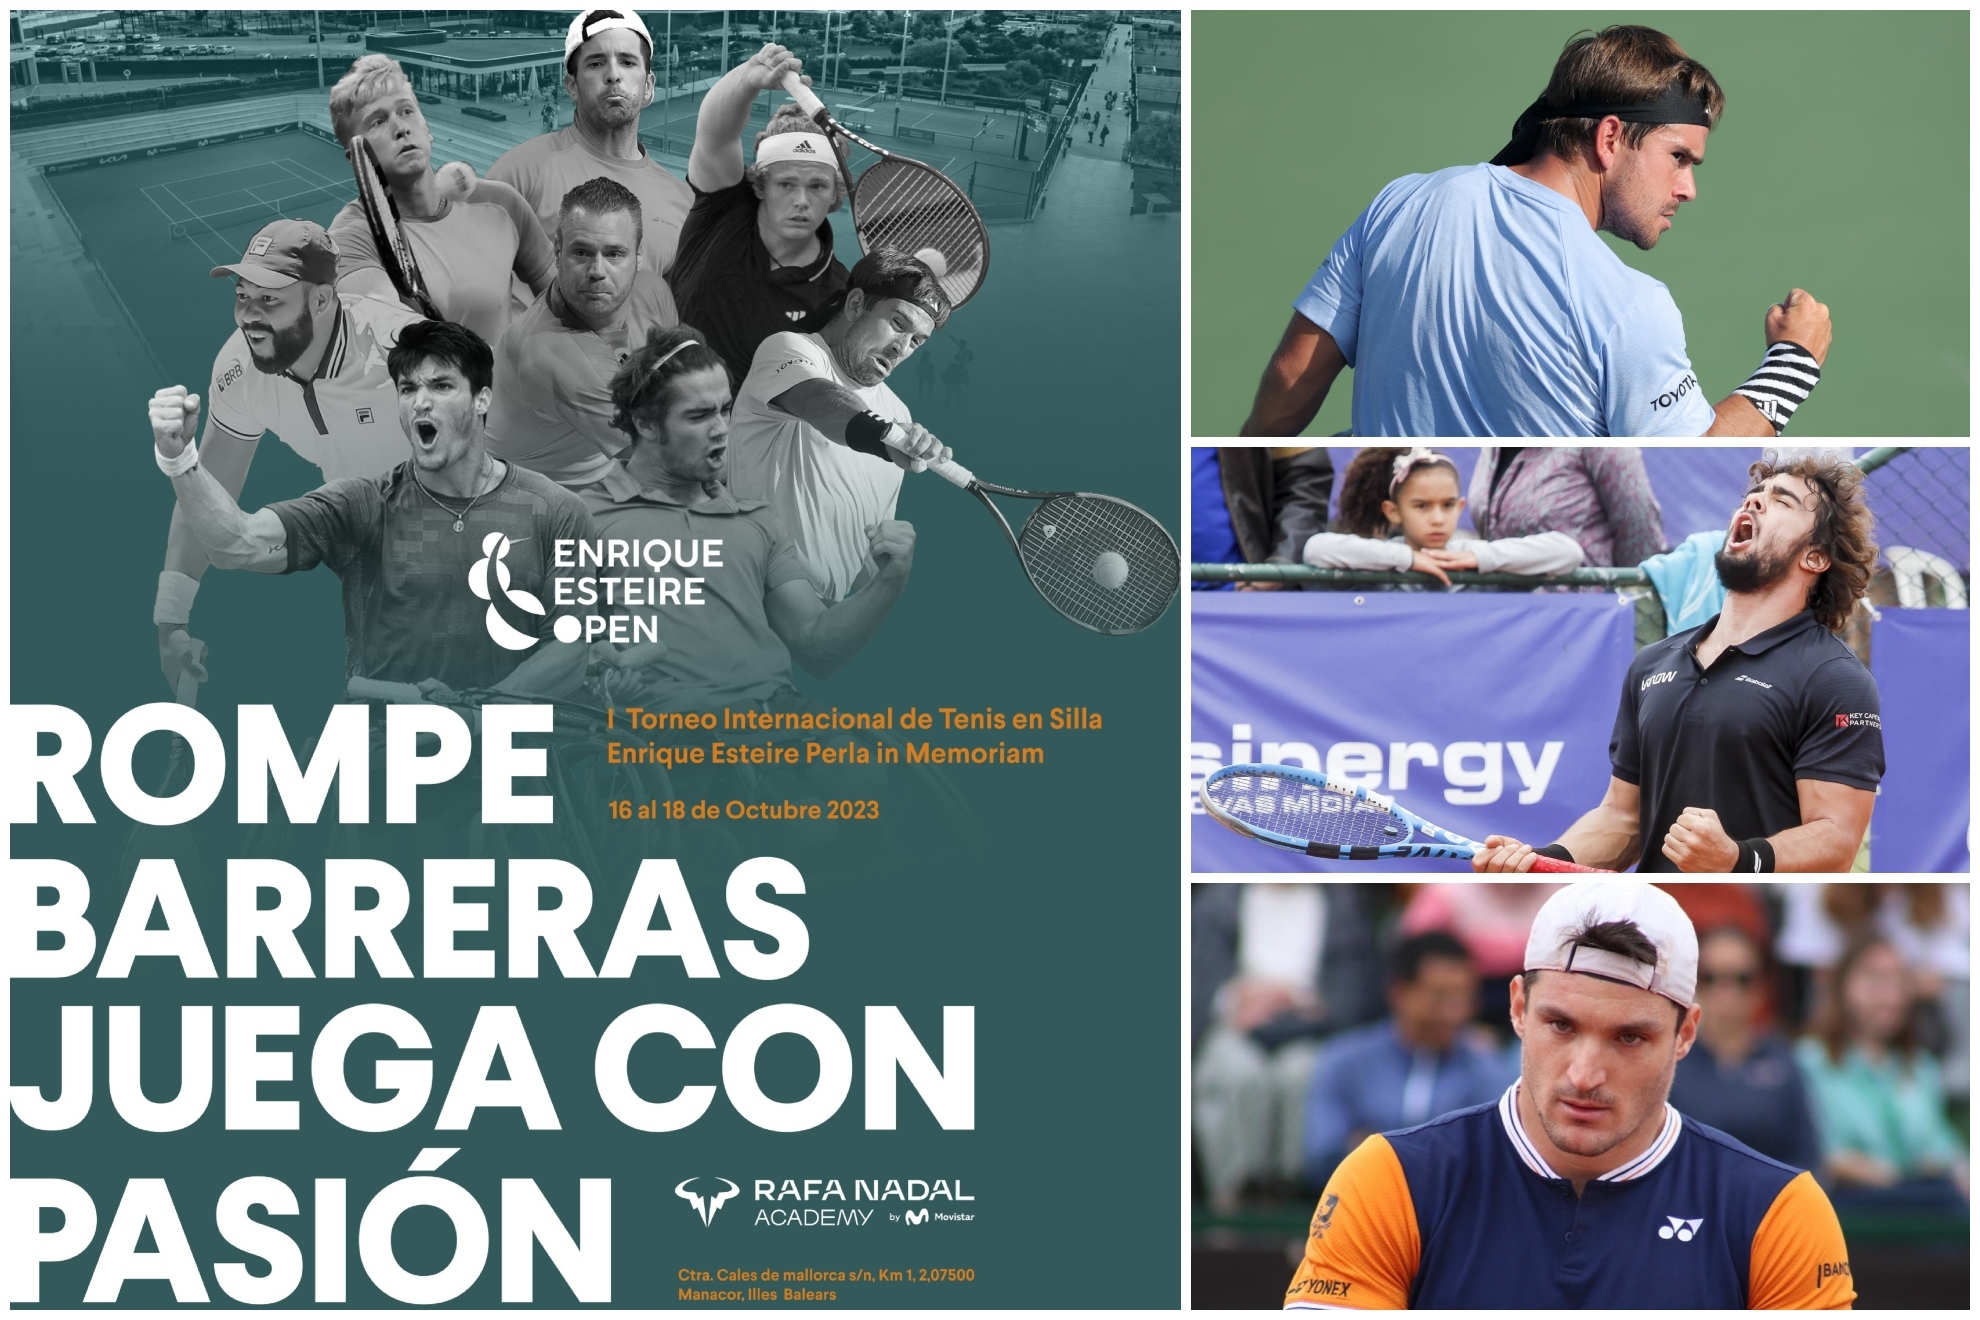 La Rafa Nadal Academy acoge el "I Torneo Internacional de Tenis en Silla Enrique Esteire in Memoriam"